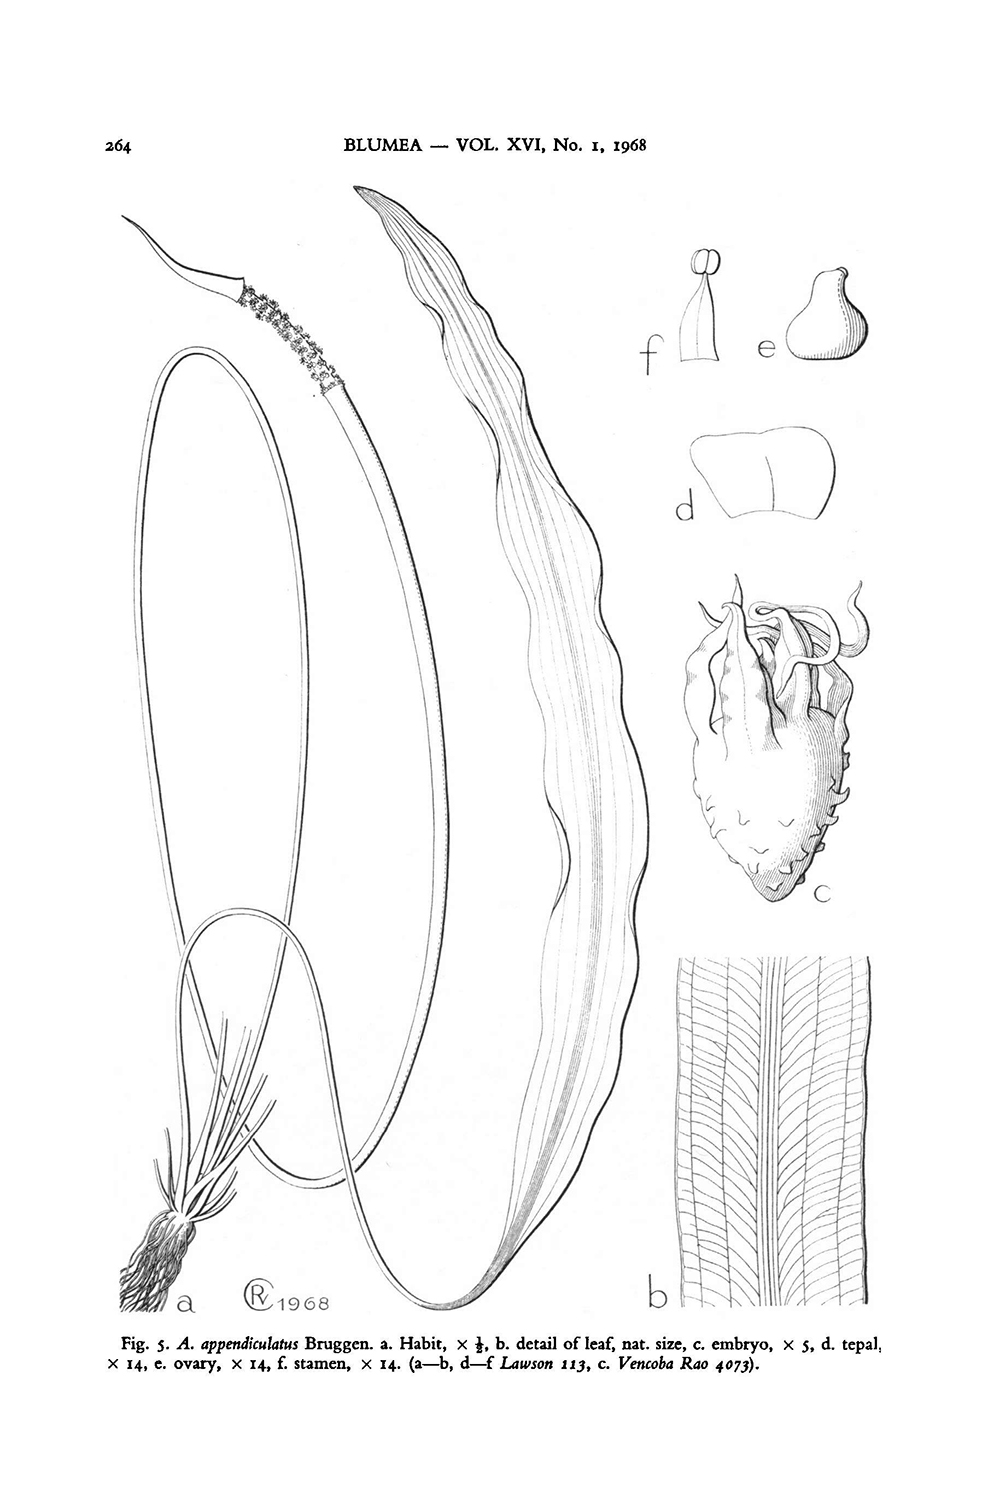 Bild aus der Erstbeschreibung von Aponogeton appendiculatus